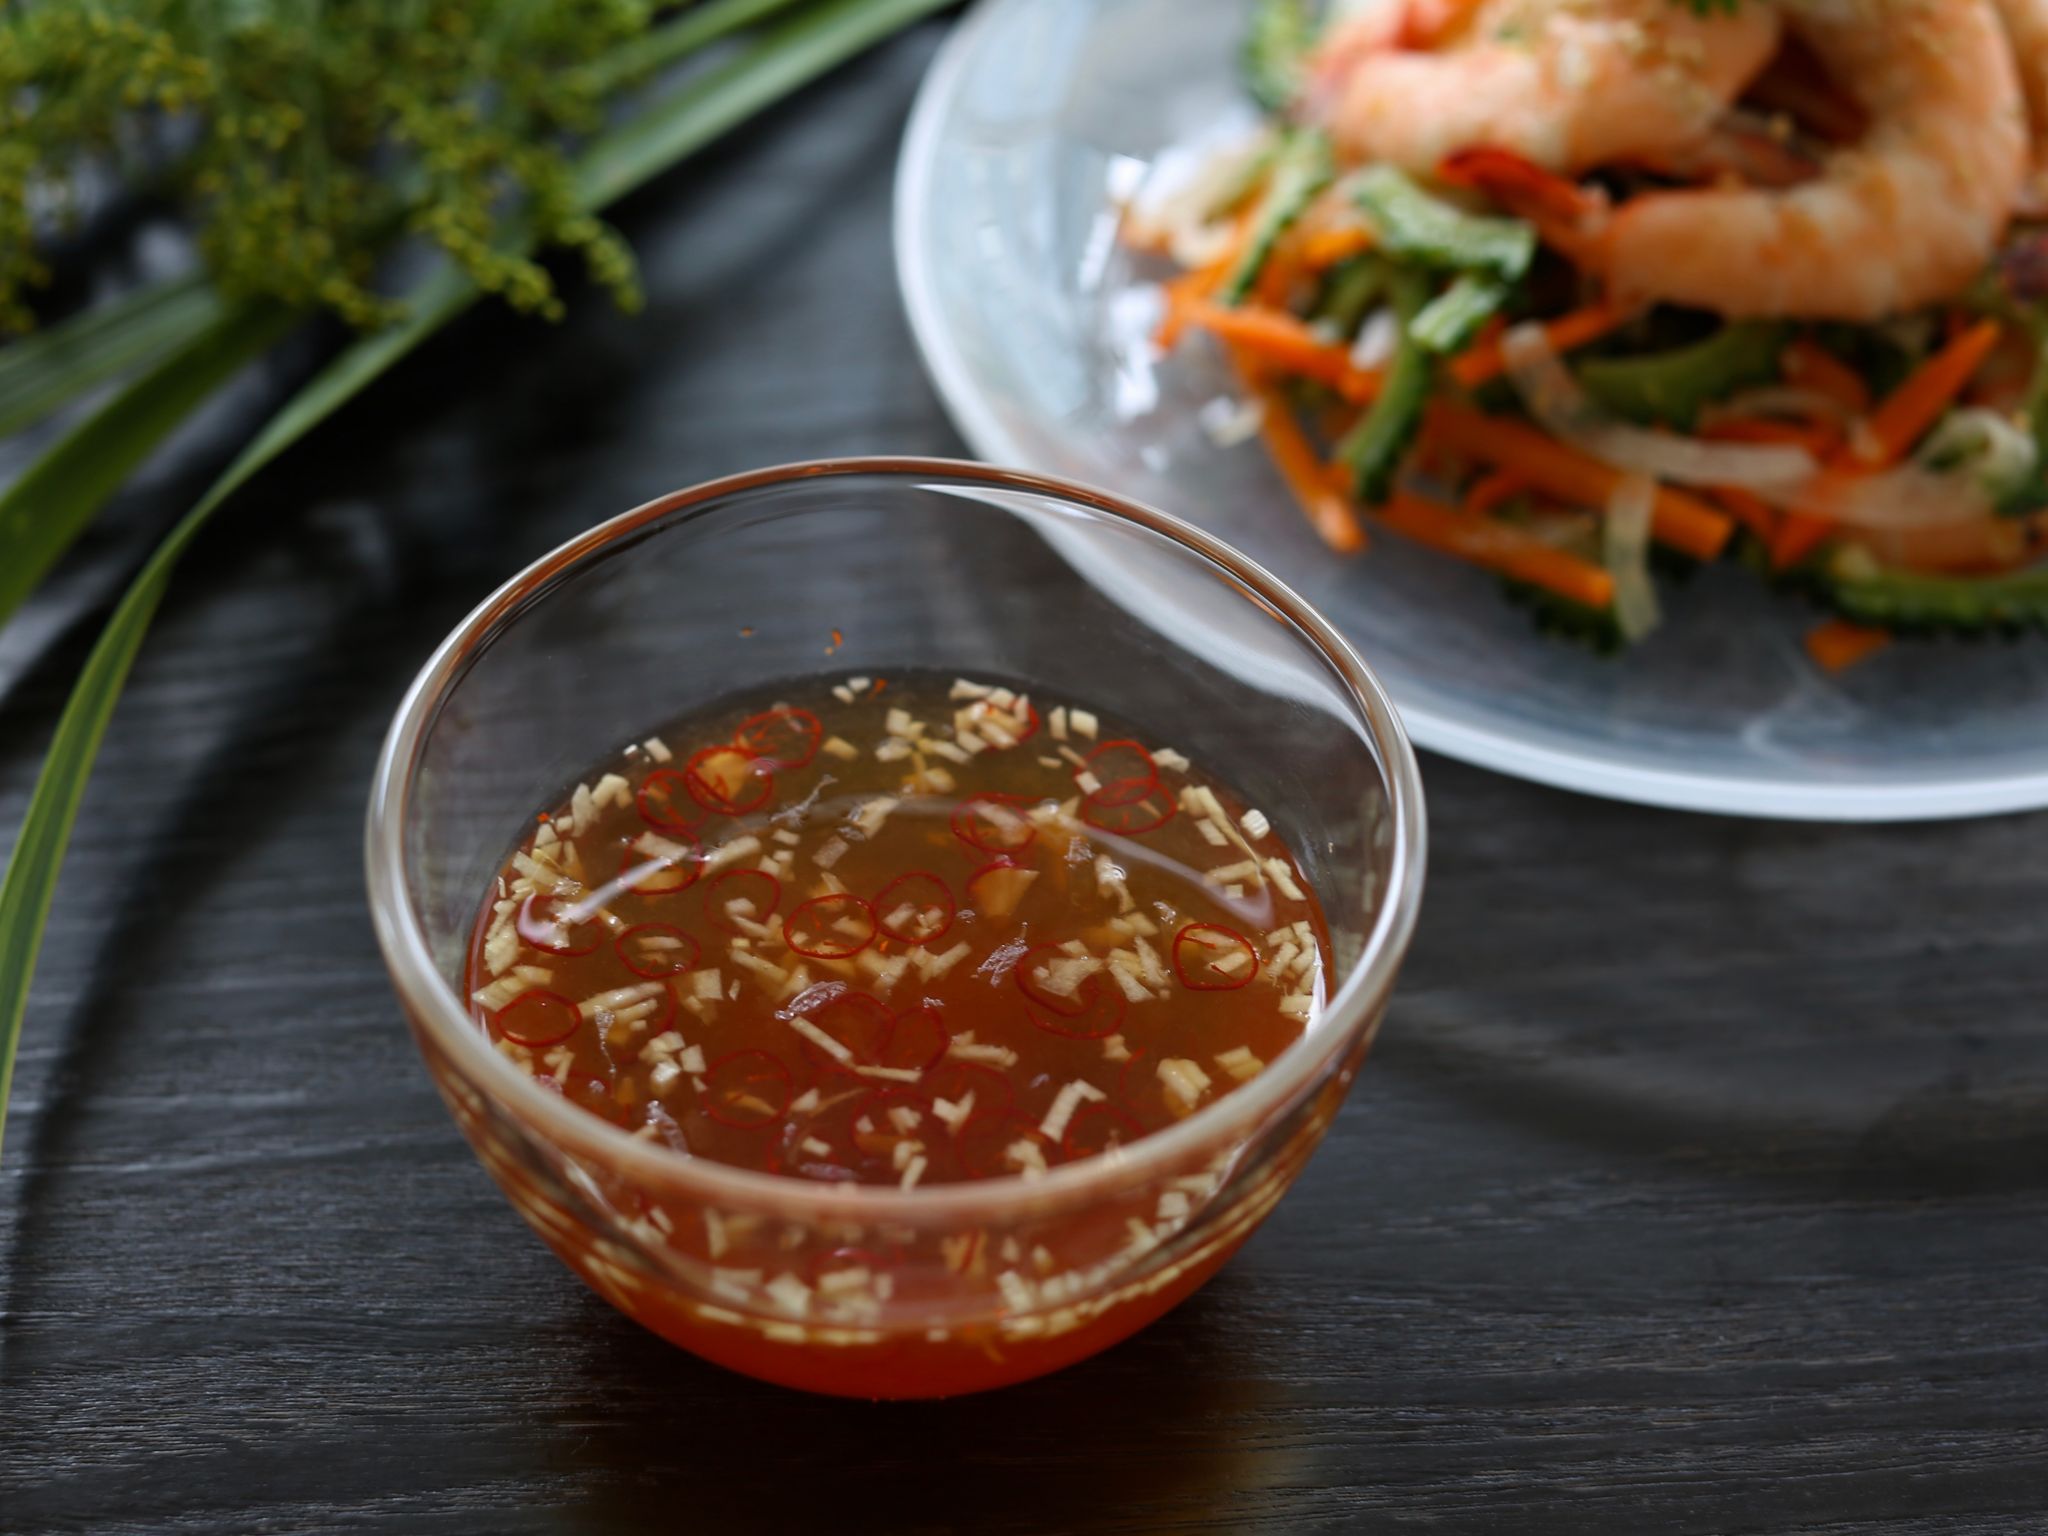 ヌクチャムの作り方 ベトナム料理研究家のおすすめ やまでら くみこ のレシピ